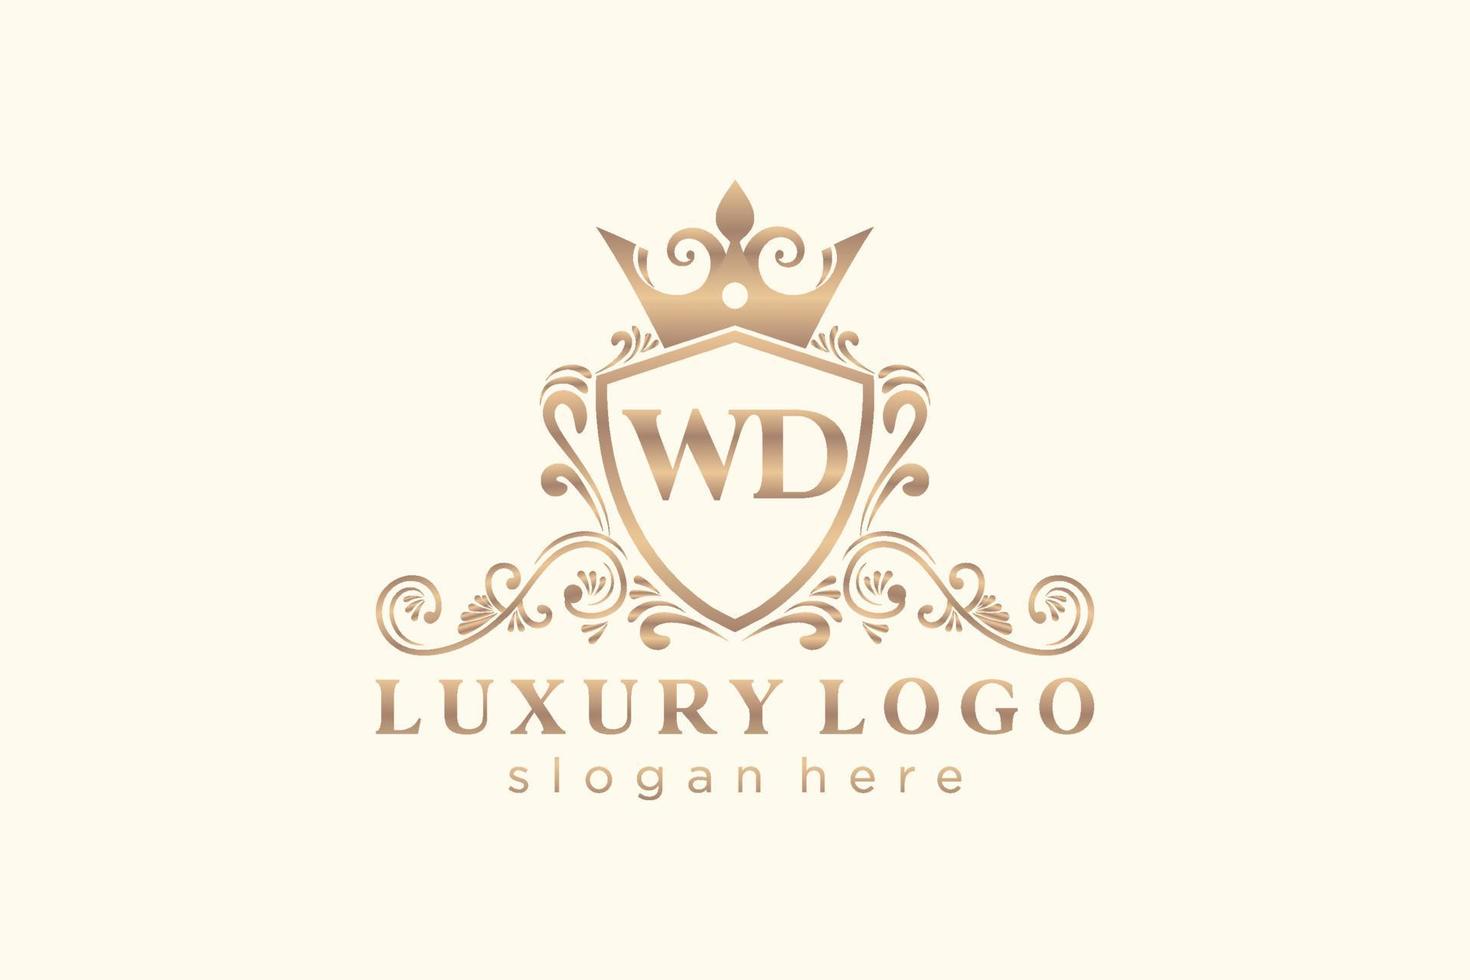 modelo de logotipo de luxo real carta inicial wd em arte vetorial para restaurante, realeza, boutique, café, hotel, heráldica, joias, moda e outras ilustrações vetoriais. vetor